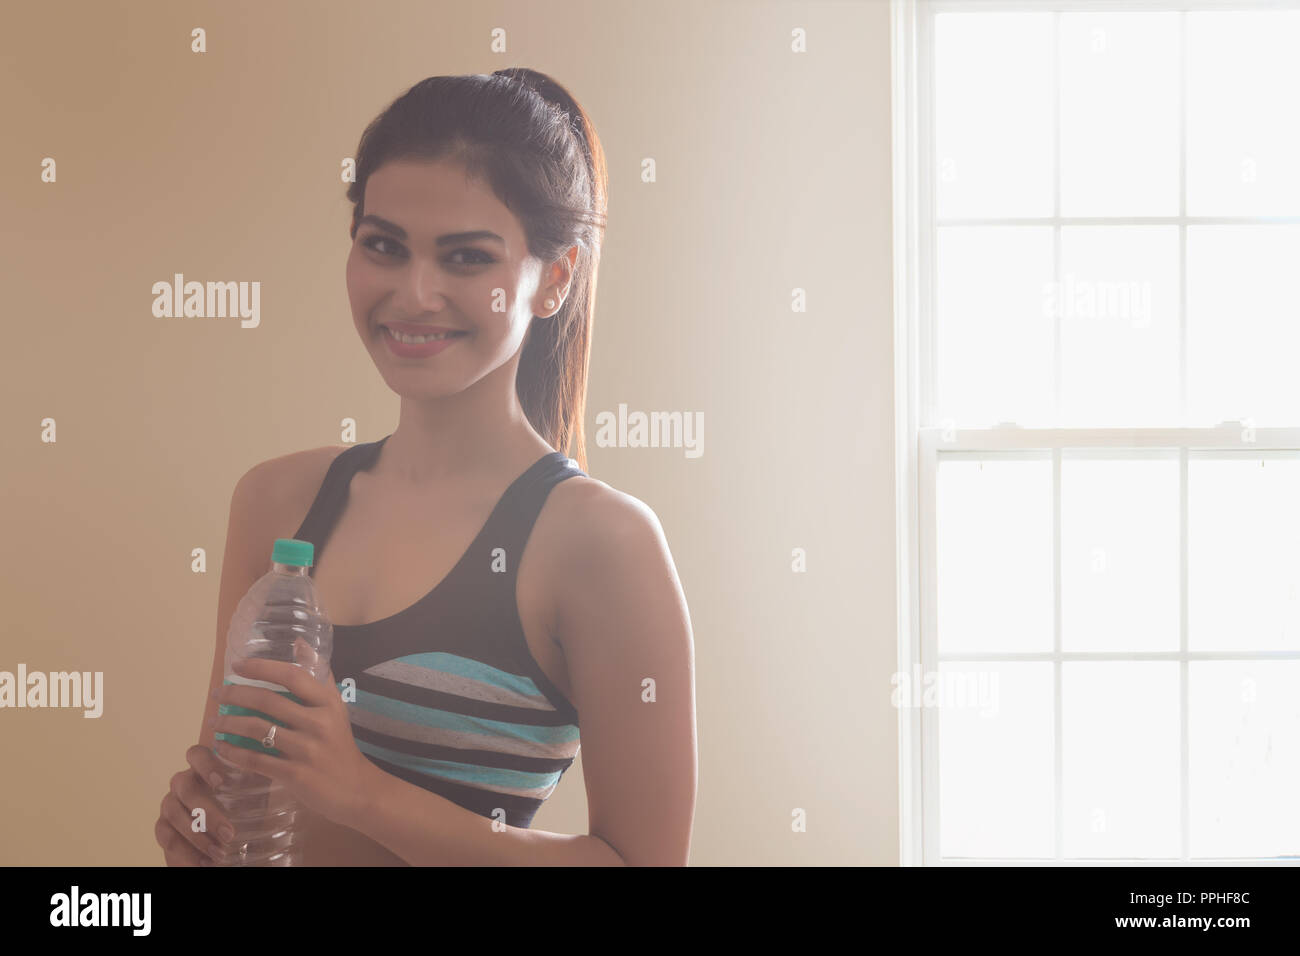 Porträt eines lächelnden jungen Frau in Sportklamotten halten Sie die Flasche nach dem Workout. Stockfoto